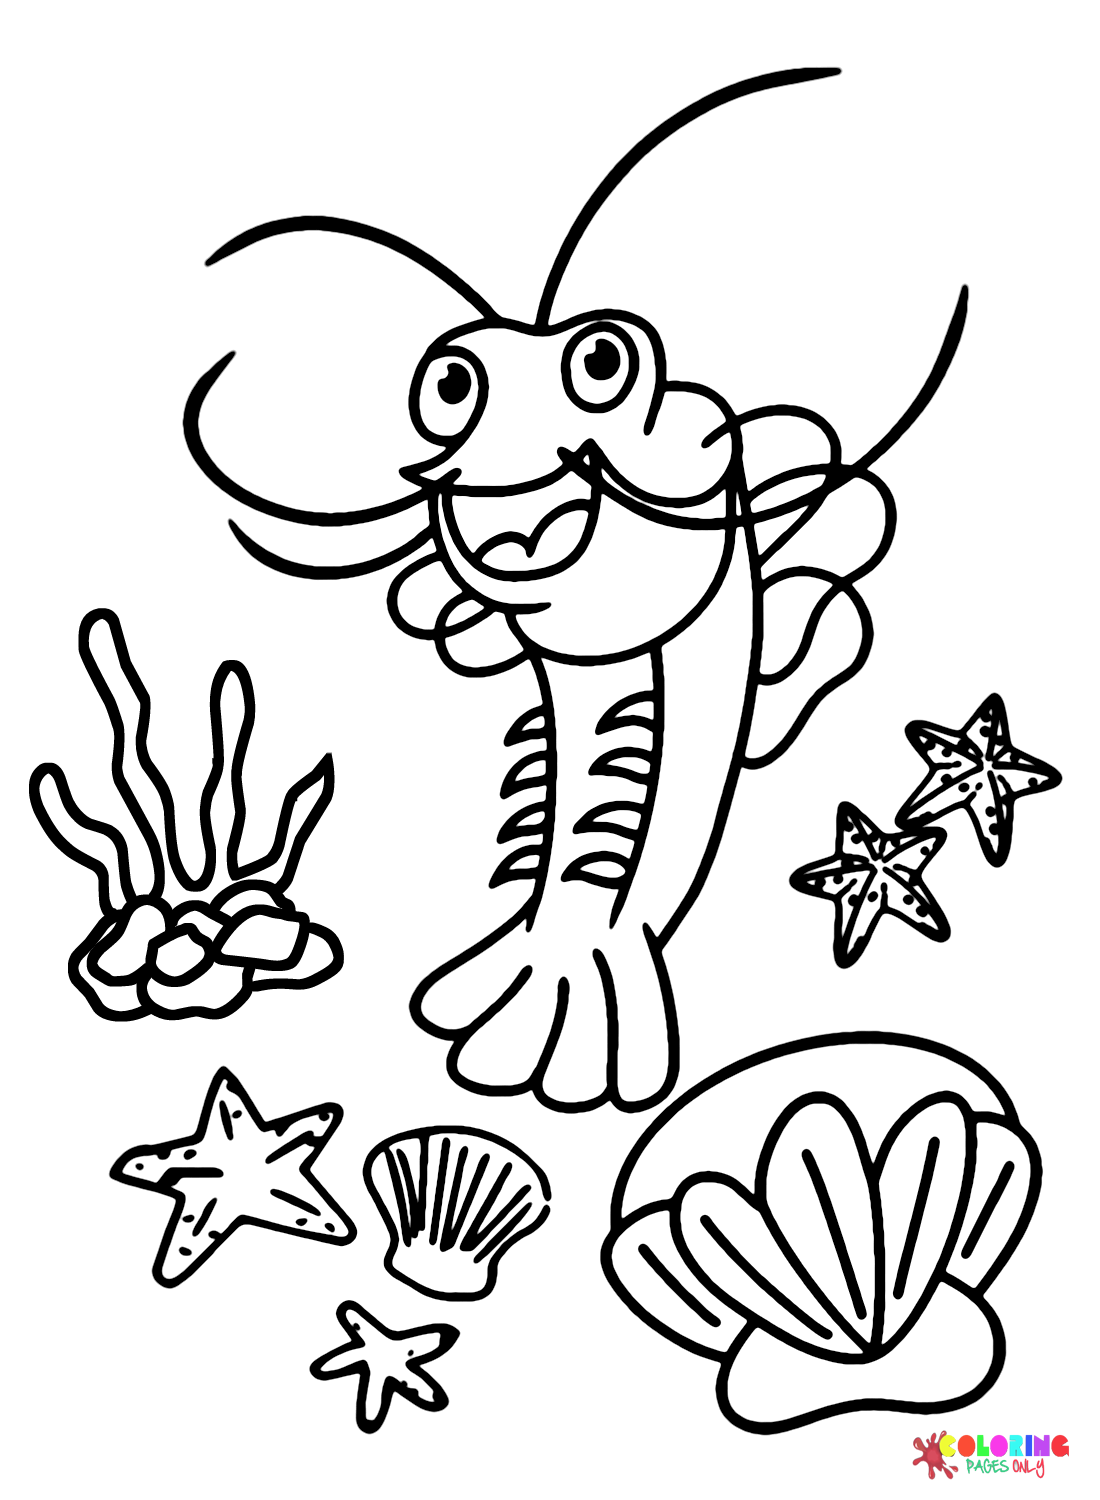 Shrimp Images Coloring Page